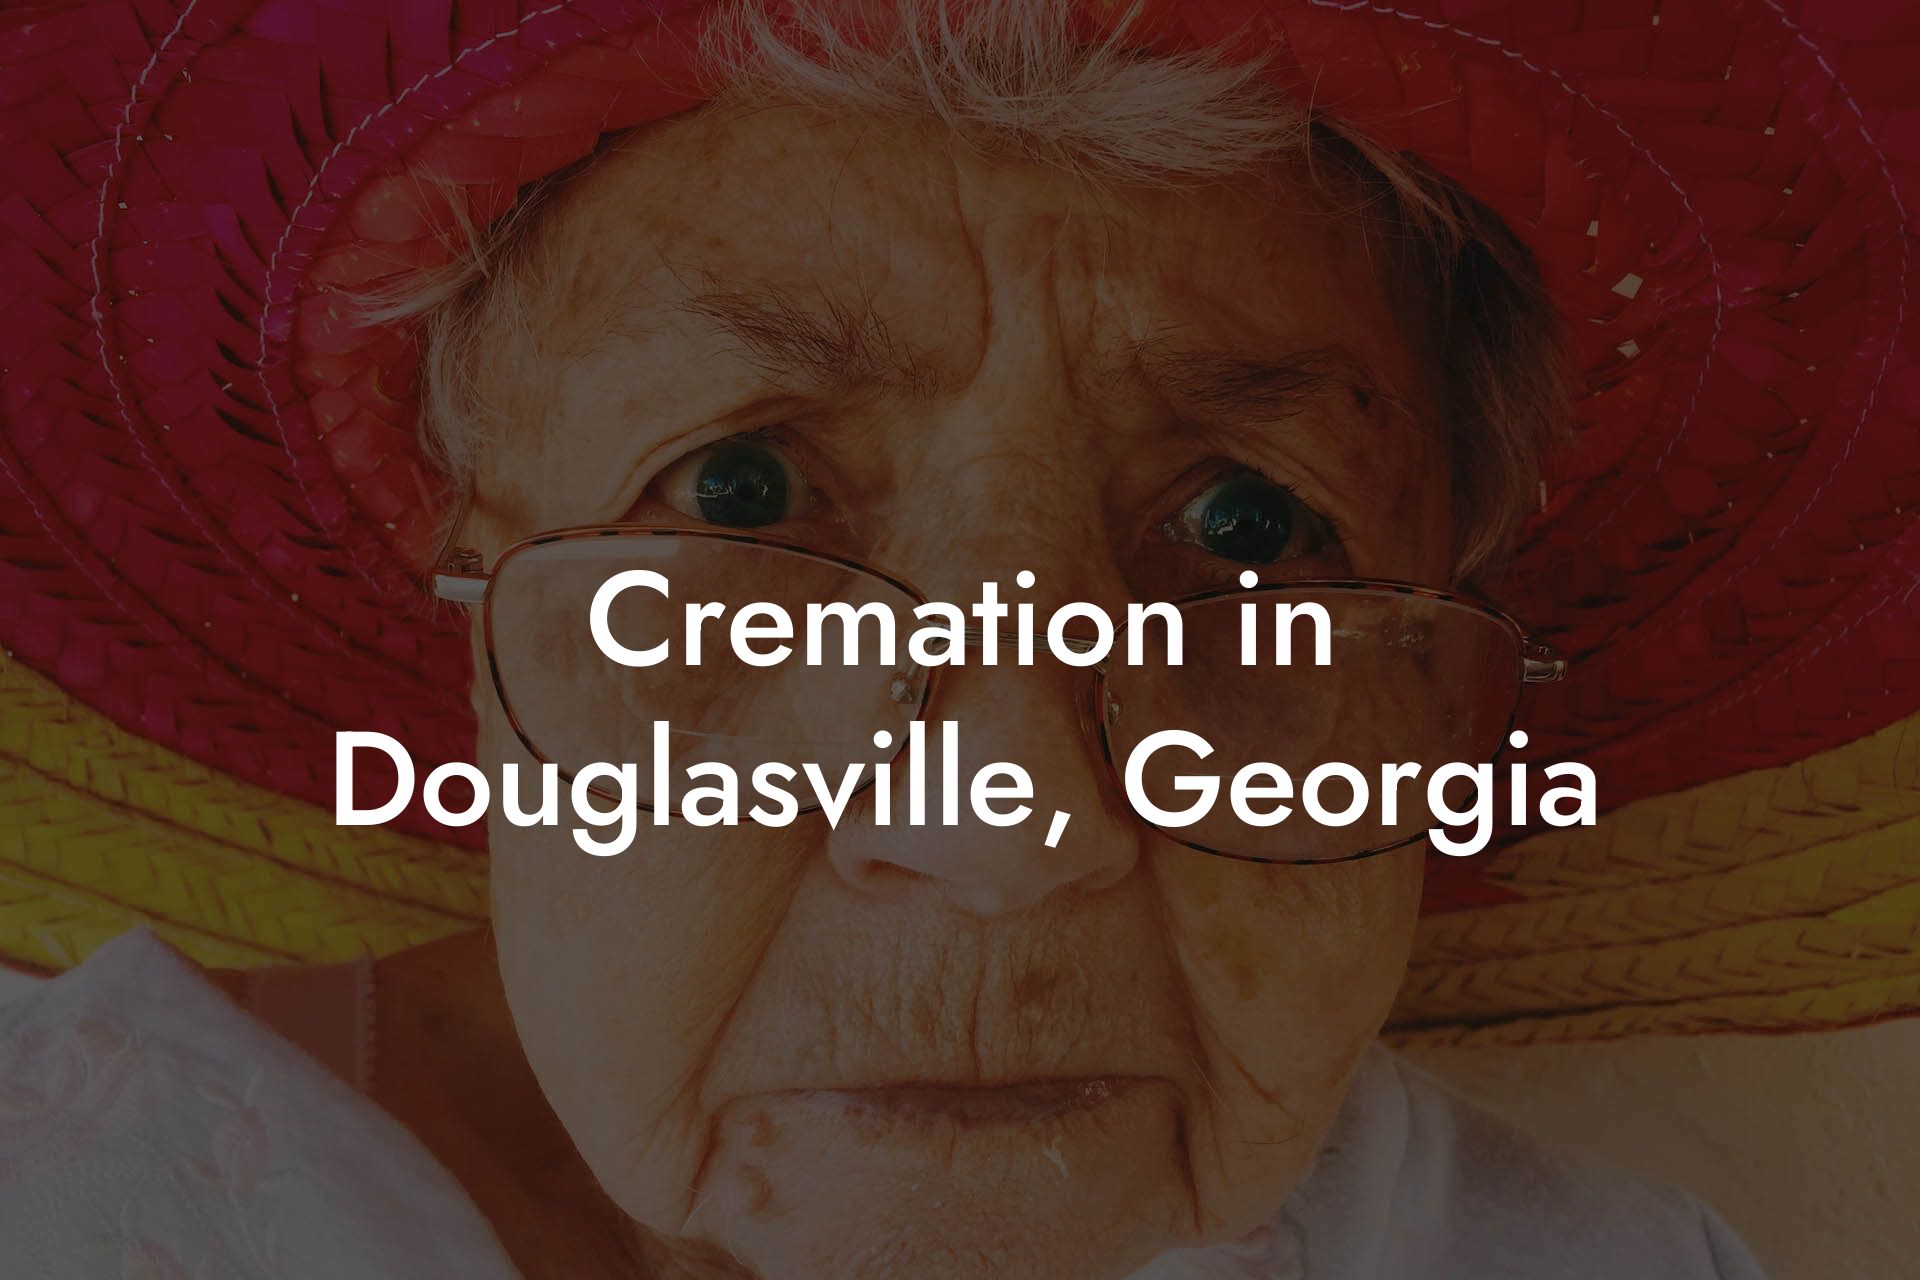 Cremation in Douglasville, Georgia